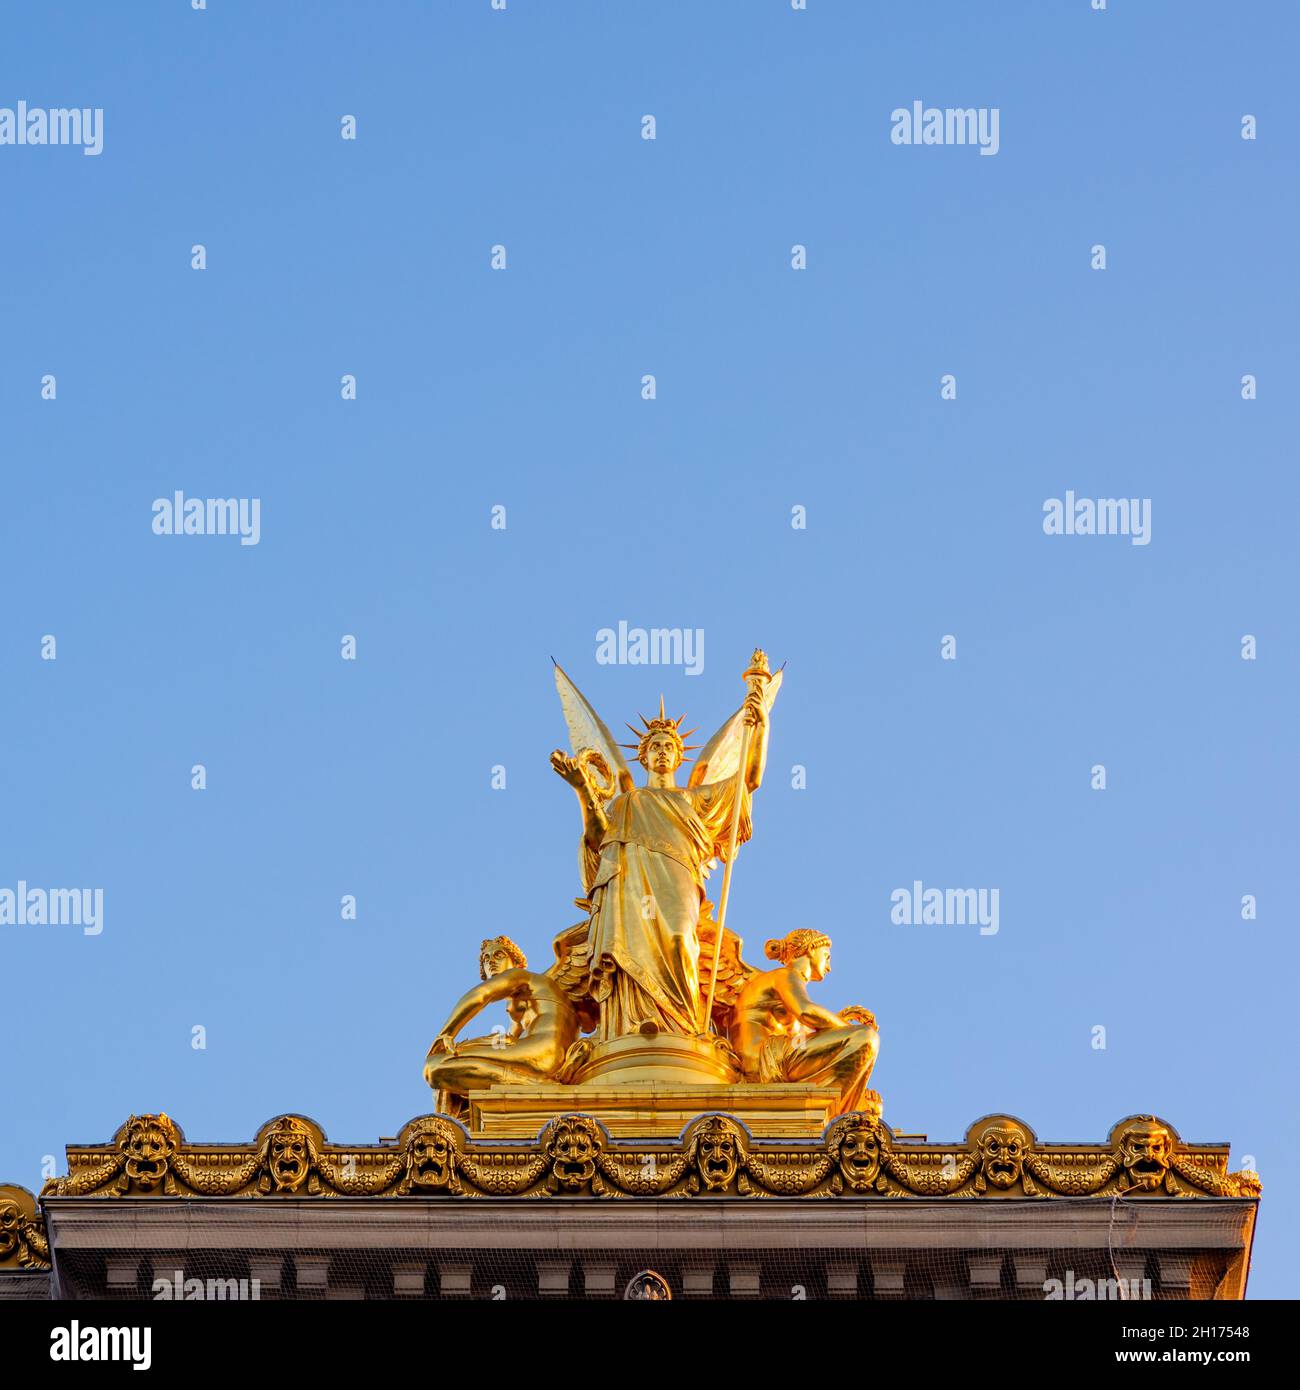 Scultura d'oro in cima all'Opera di Parigi, realizzata in primavera mattina con cielo blu perfetto e senza gente Foto Stock